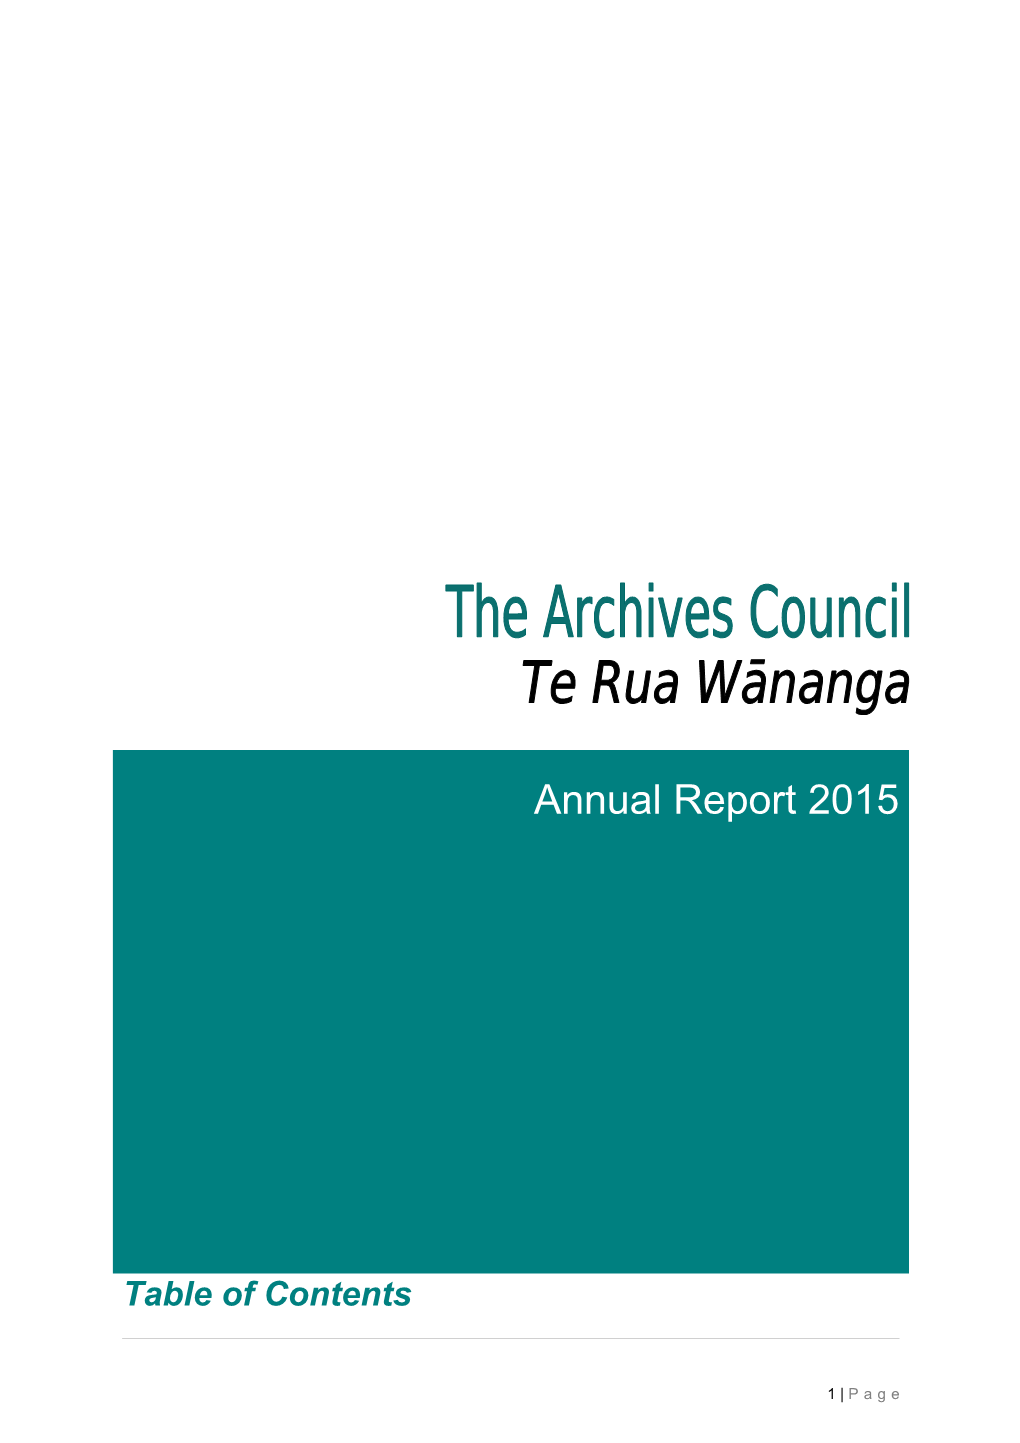 The Archives Council Te Rua Wānanga Annual Report 2015